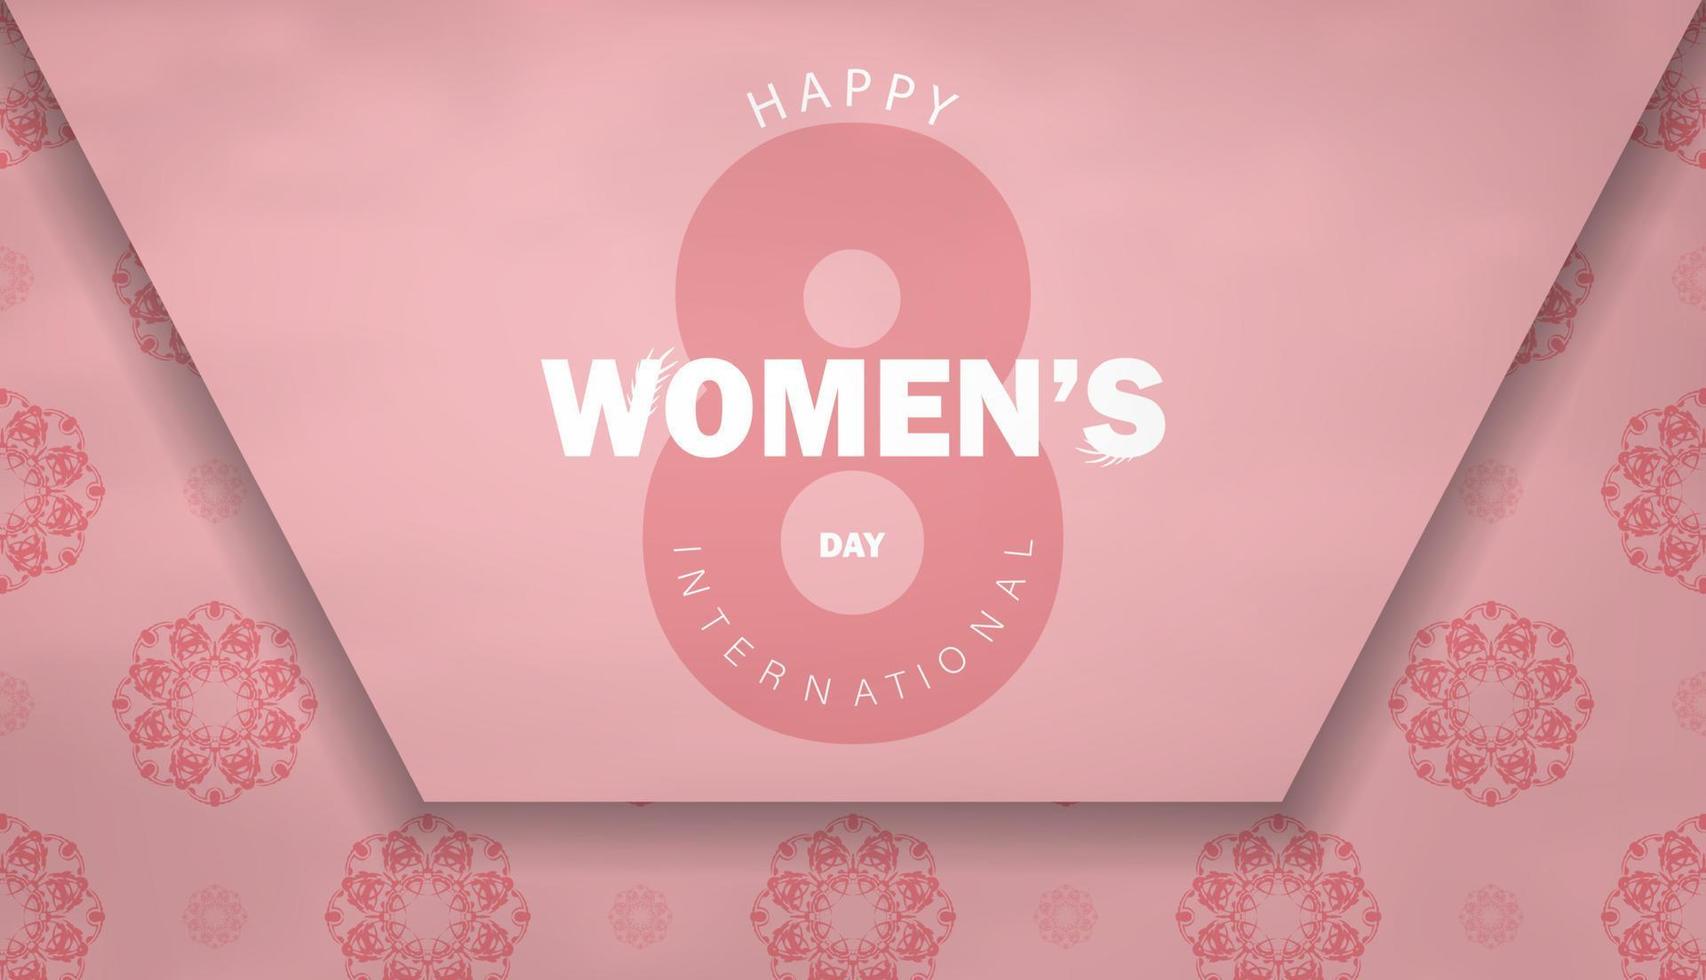 folleto 8 de marzo día internacional de la mujer color rosa con adorno vintage vector